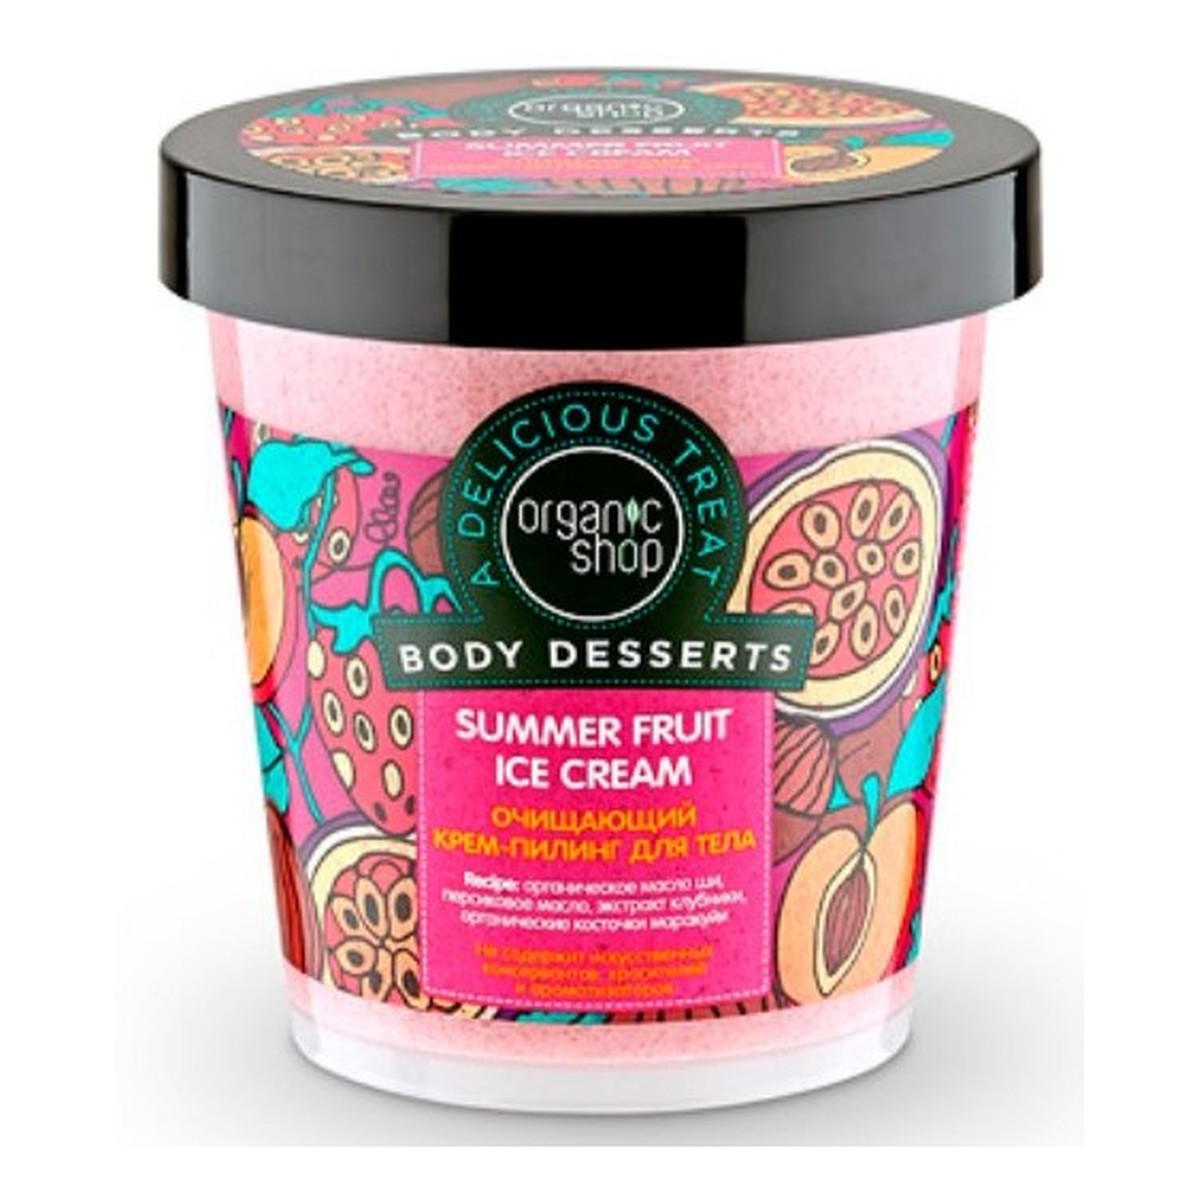 Organic Shop Body Desserts Owocowe Letnie Lody Oczyszczający Kremowy Scrub Do Ciała 450ml